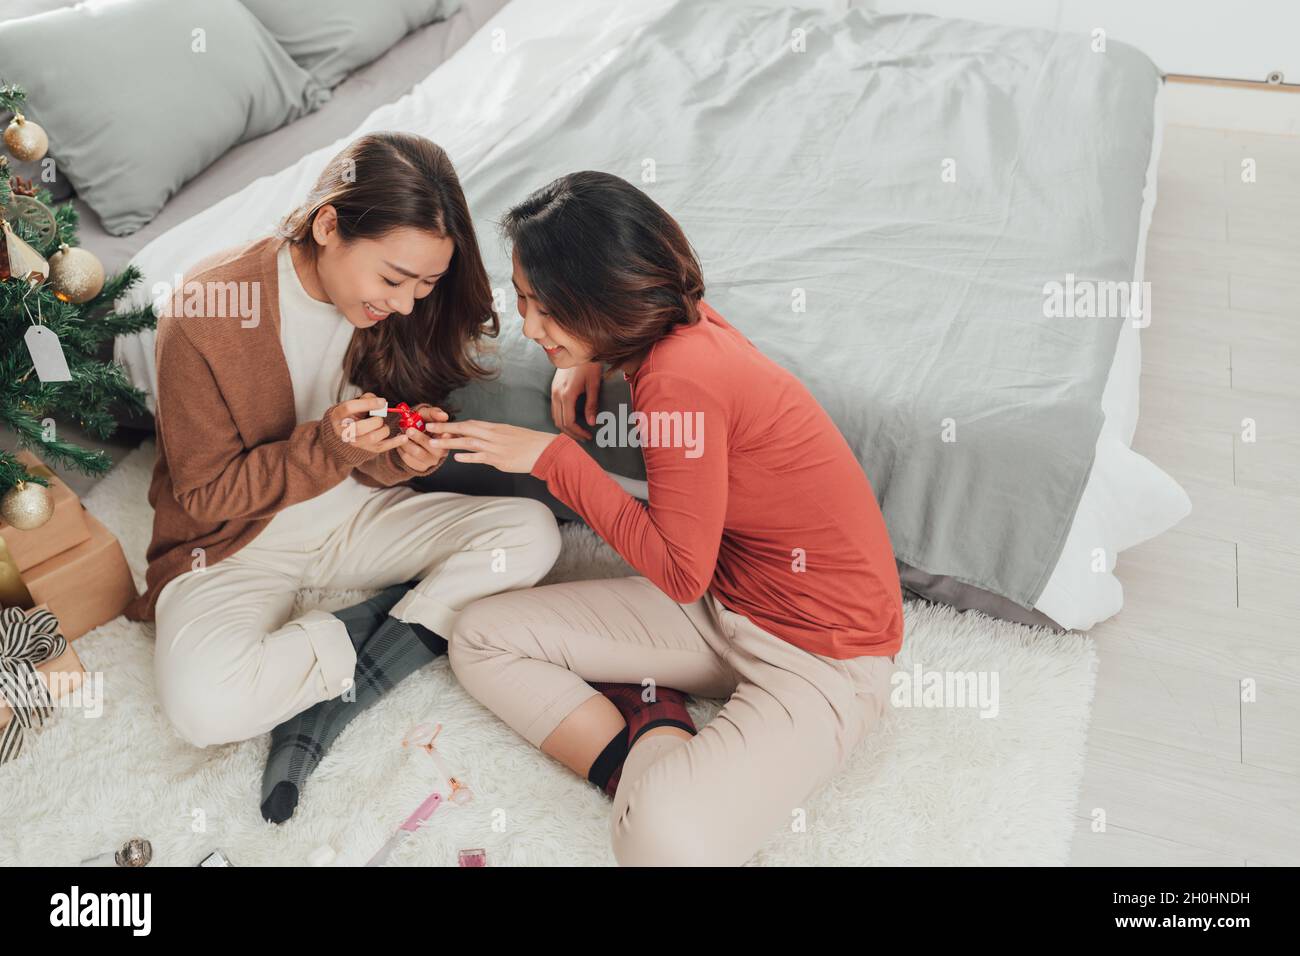 deux magnifiques jeunes femmes asiatiques peignent des ongles allant des pédicures, l'un d'eux souffle sur les ongles Banque D'Images